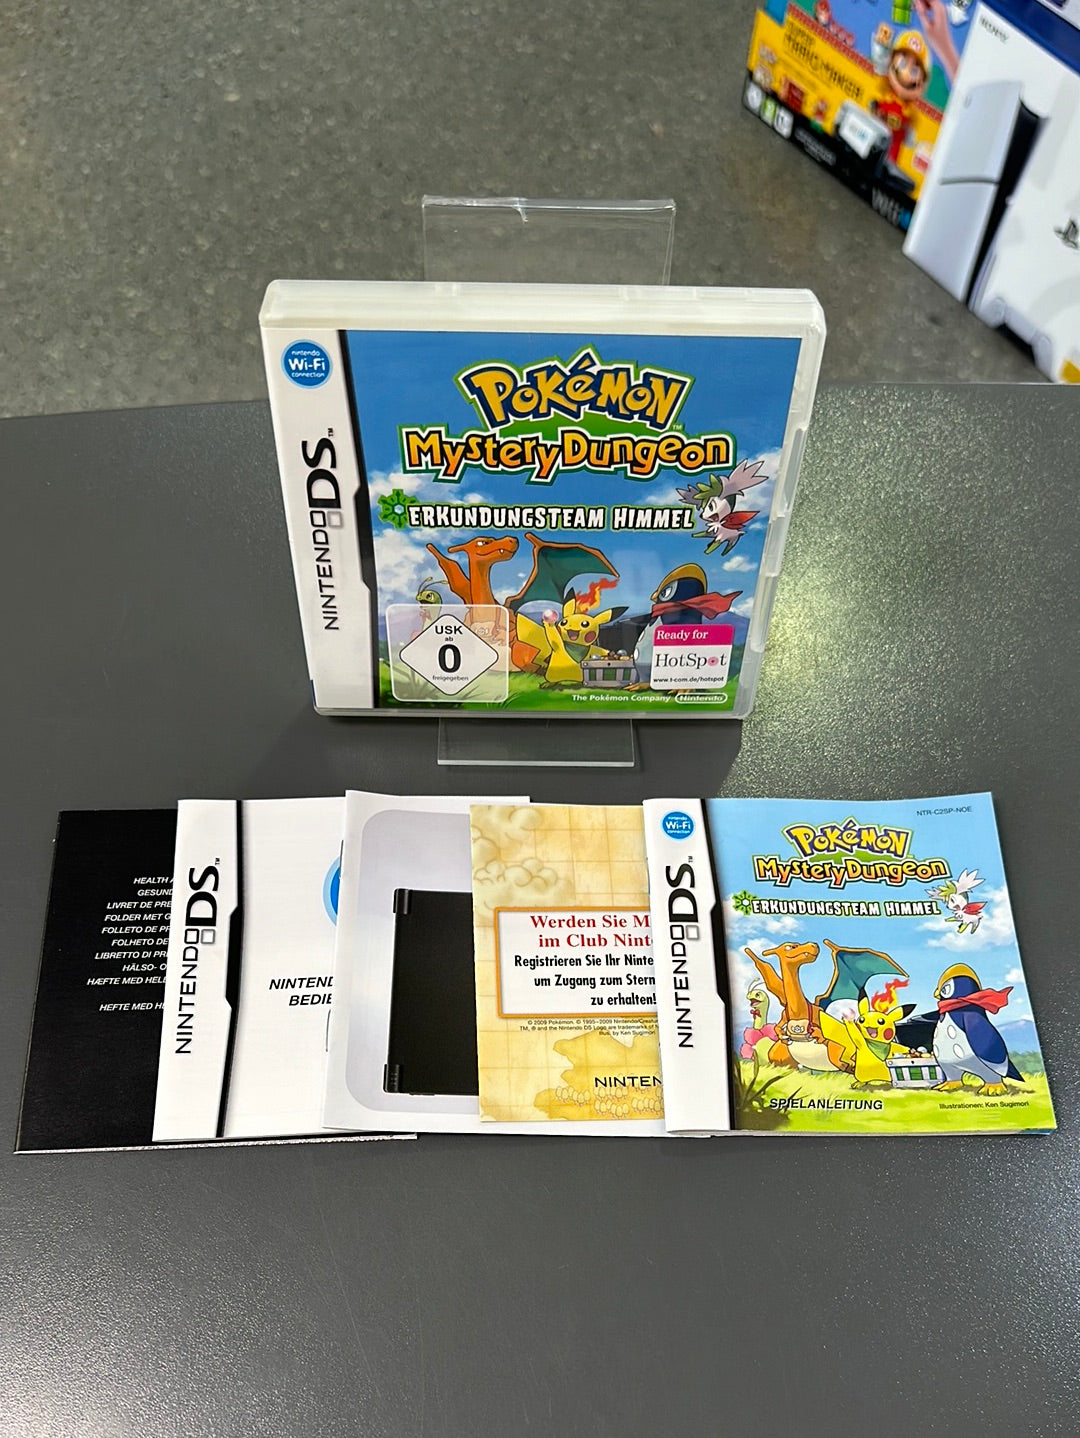 Pokémon Mystery Dungeon Erkundungsteam Himmel Nintendo DS